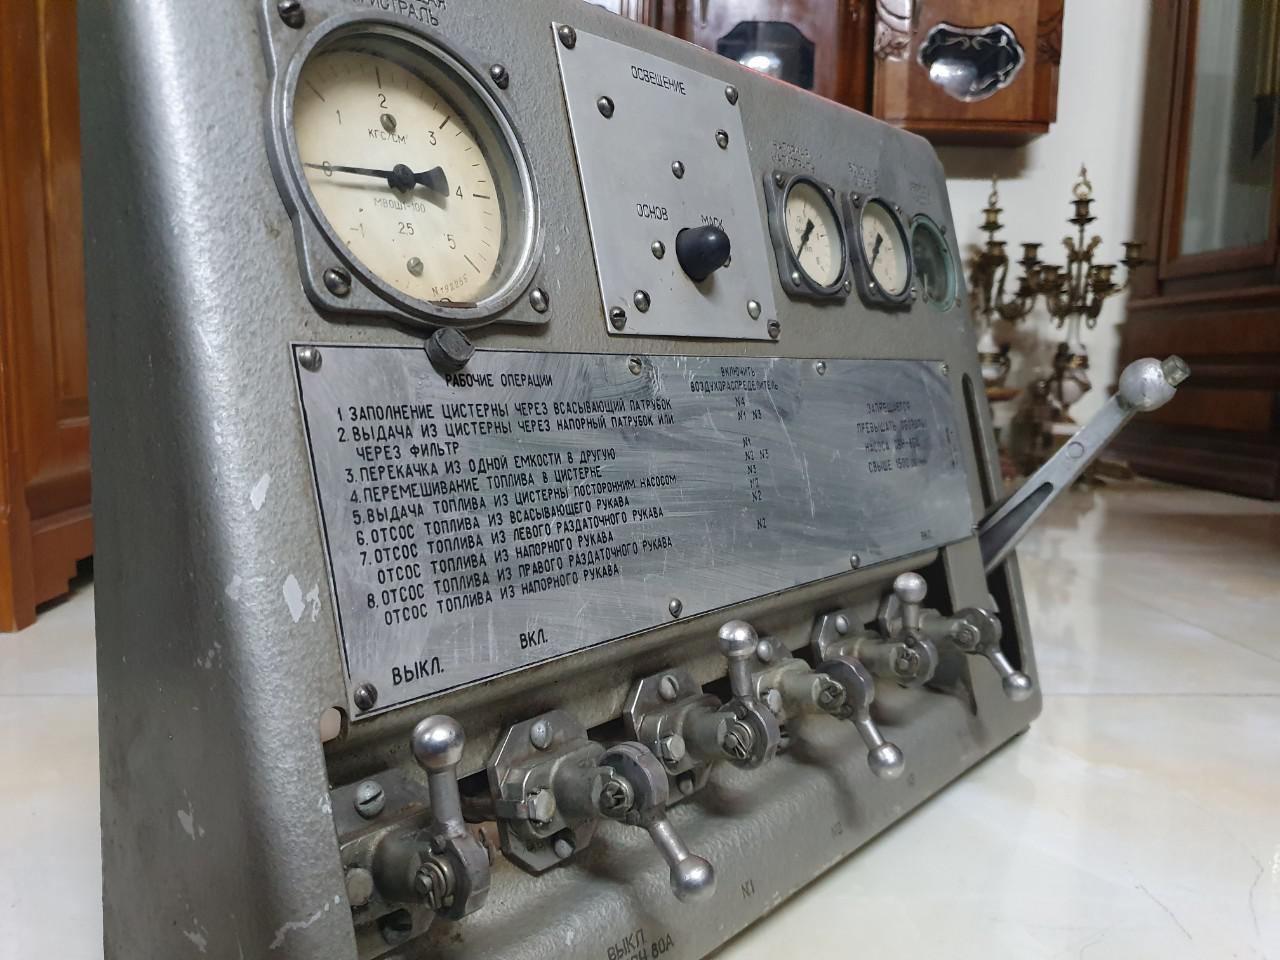 Hệ thống điều khiển trên máy bay chiến đấu MiG-17 của Liên Xô